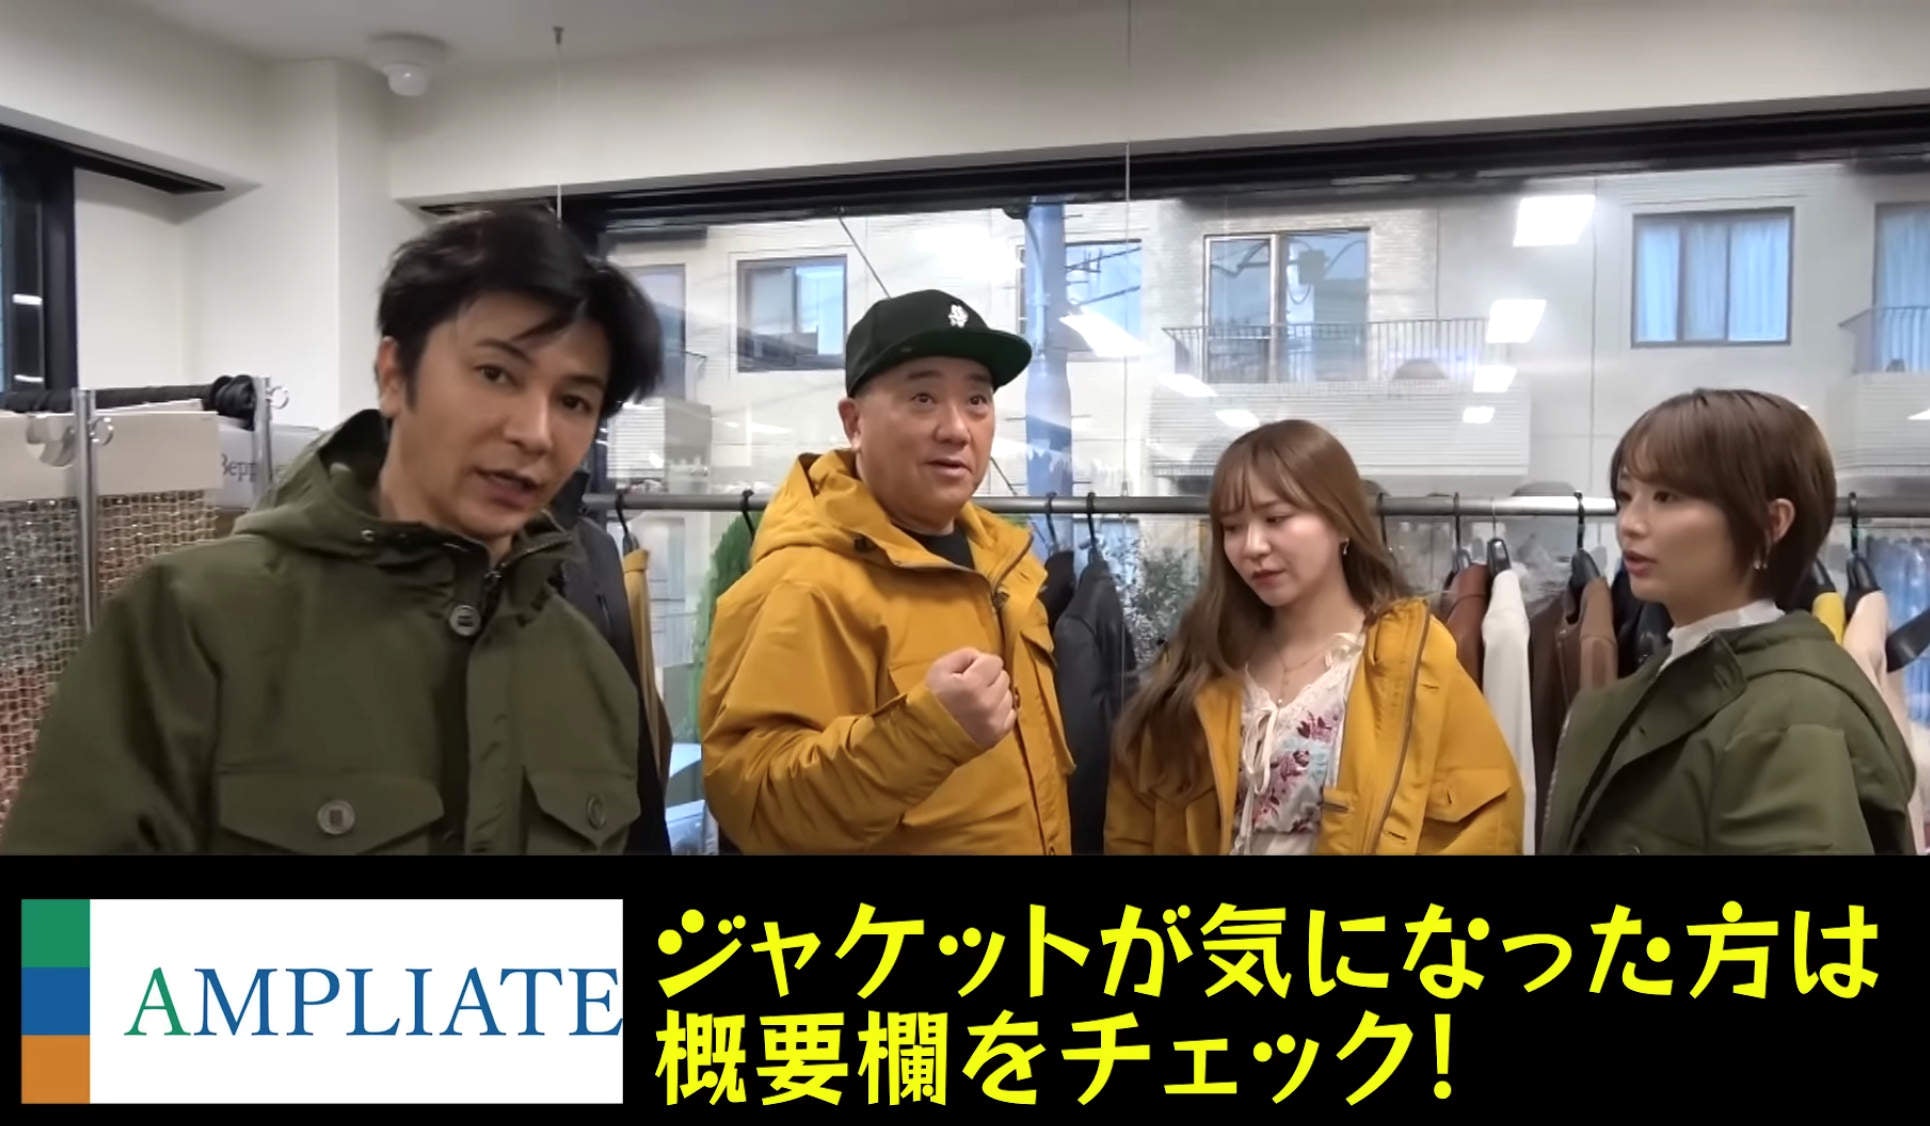 武田真治さんのYoutubeチャンネルで紹介されました。